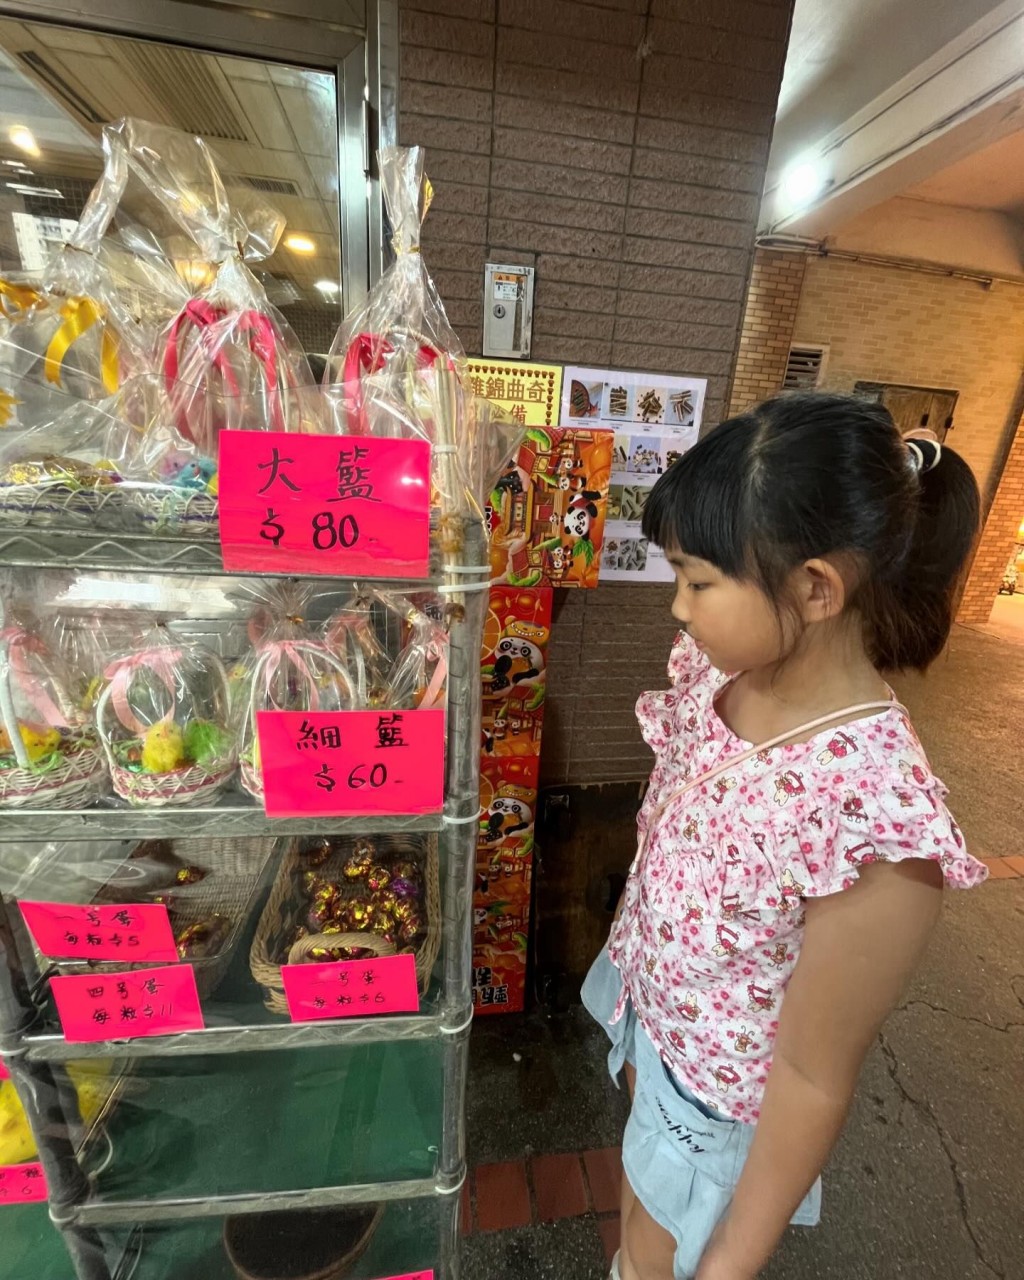 麦雅致还带子女去寻找童年回忆，买传统饼店的复活蛋应节。